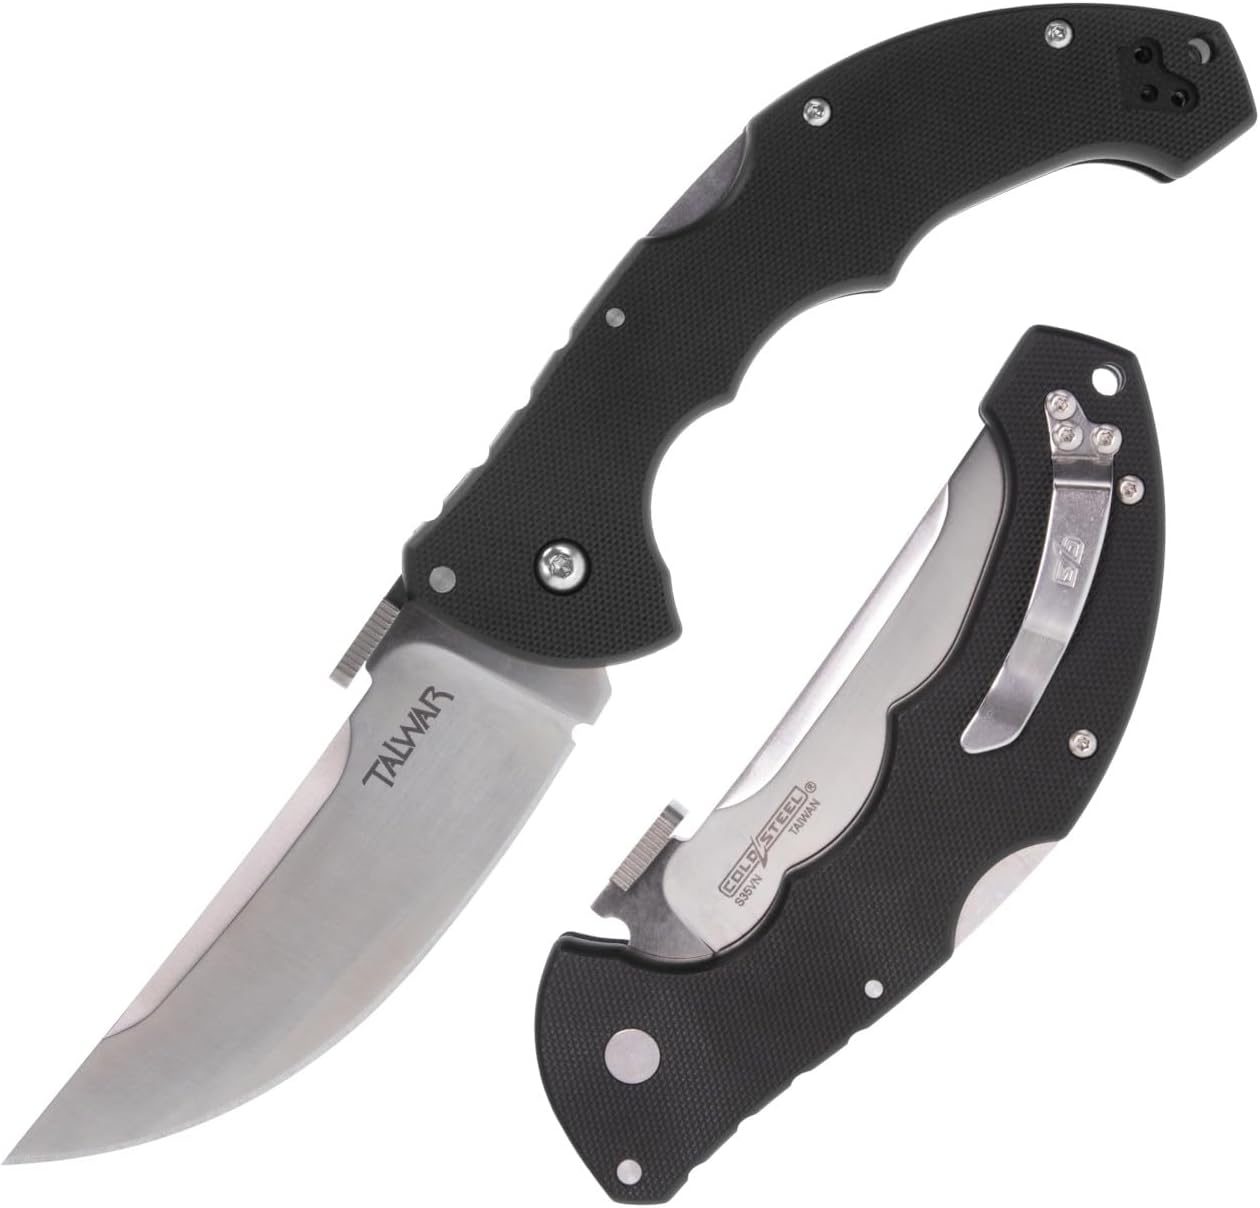 Cold Steel CS-21TTL Talwar Folding Knife, 4" Satin Blade, Tri-Ad Lock